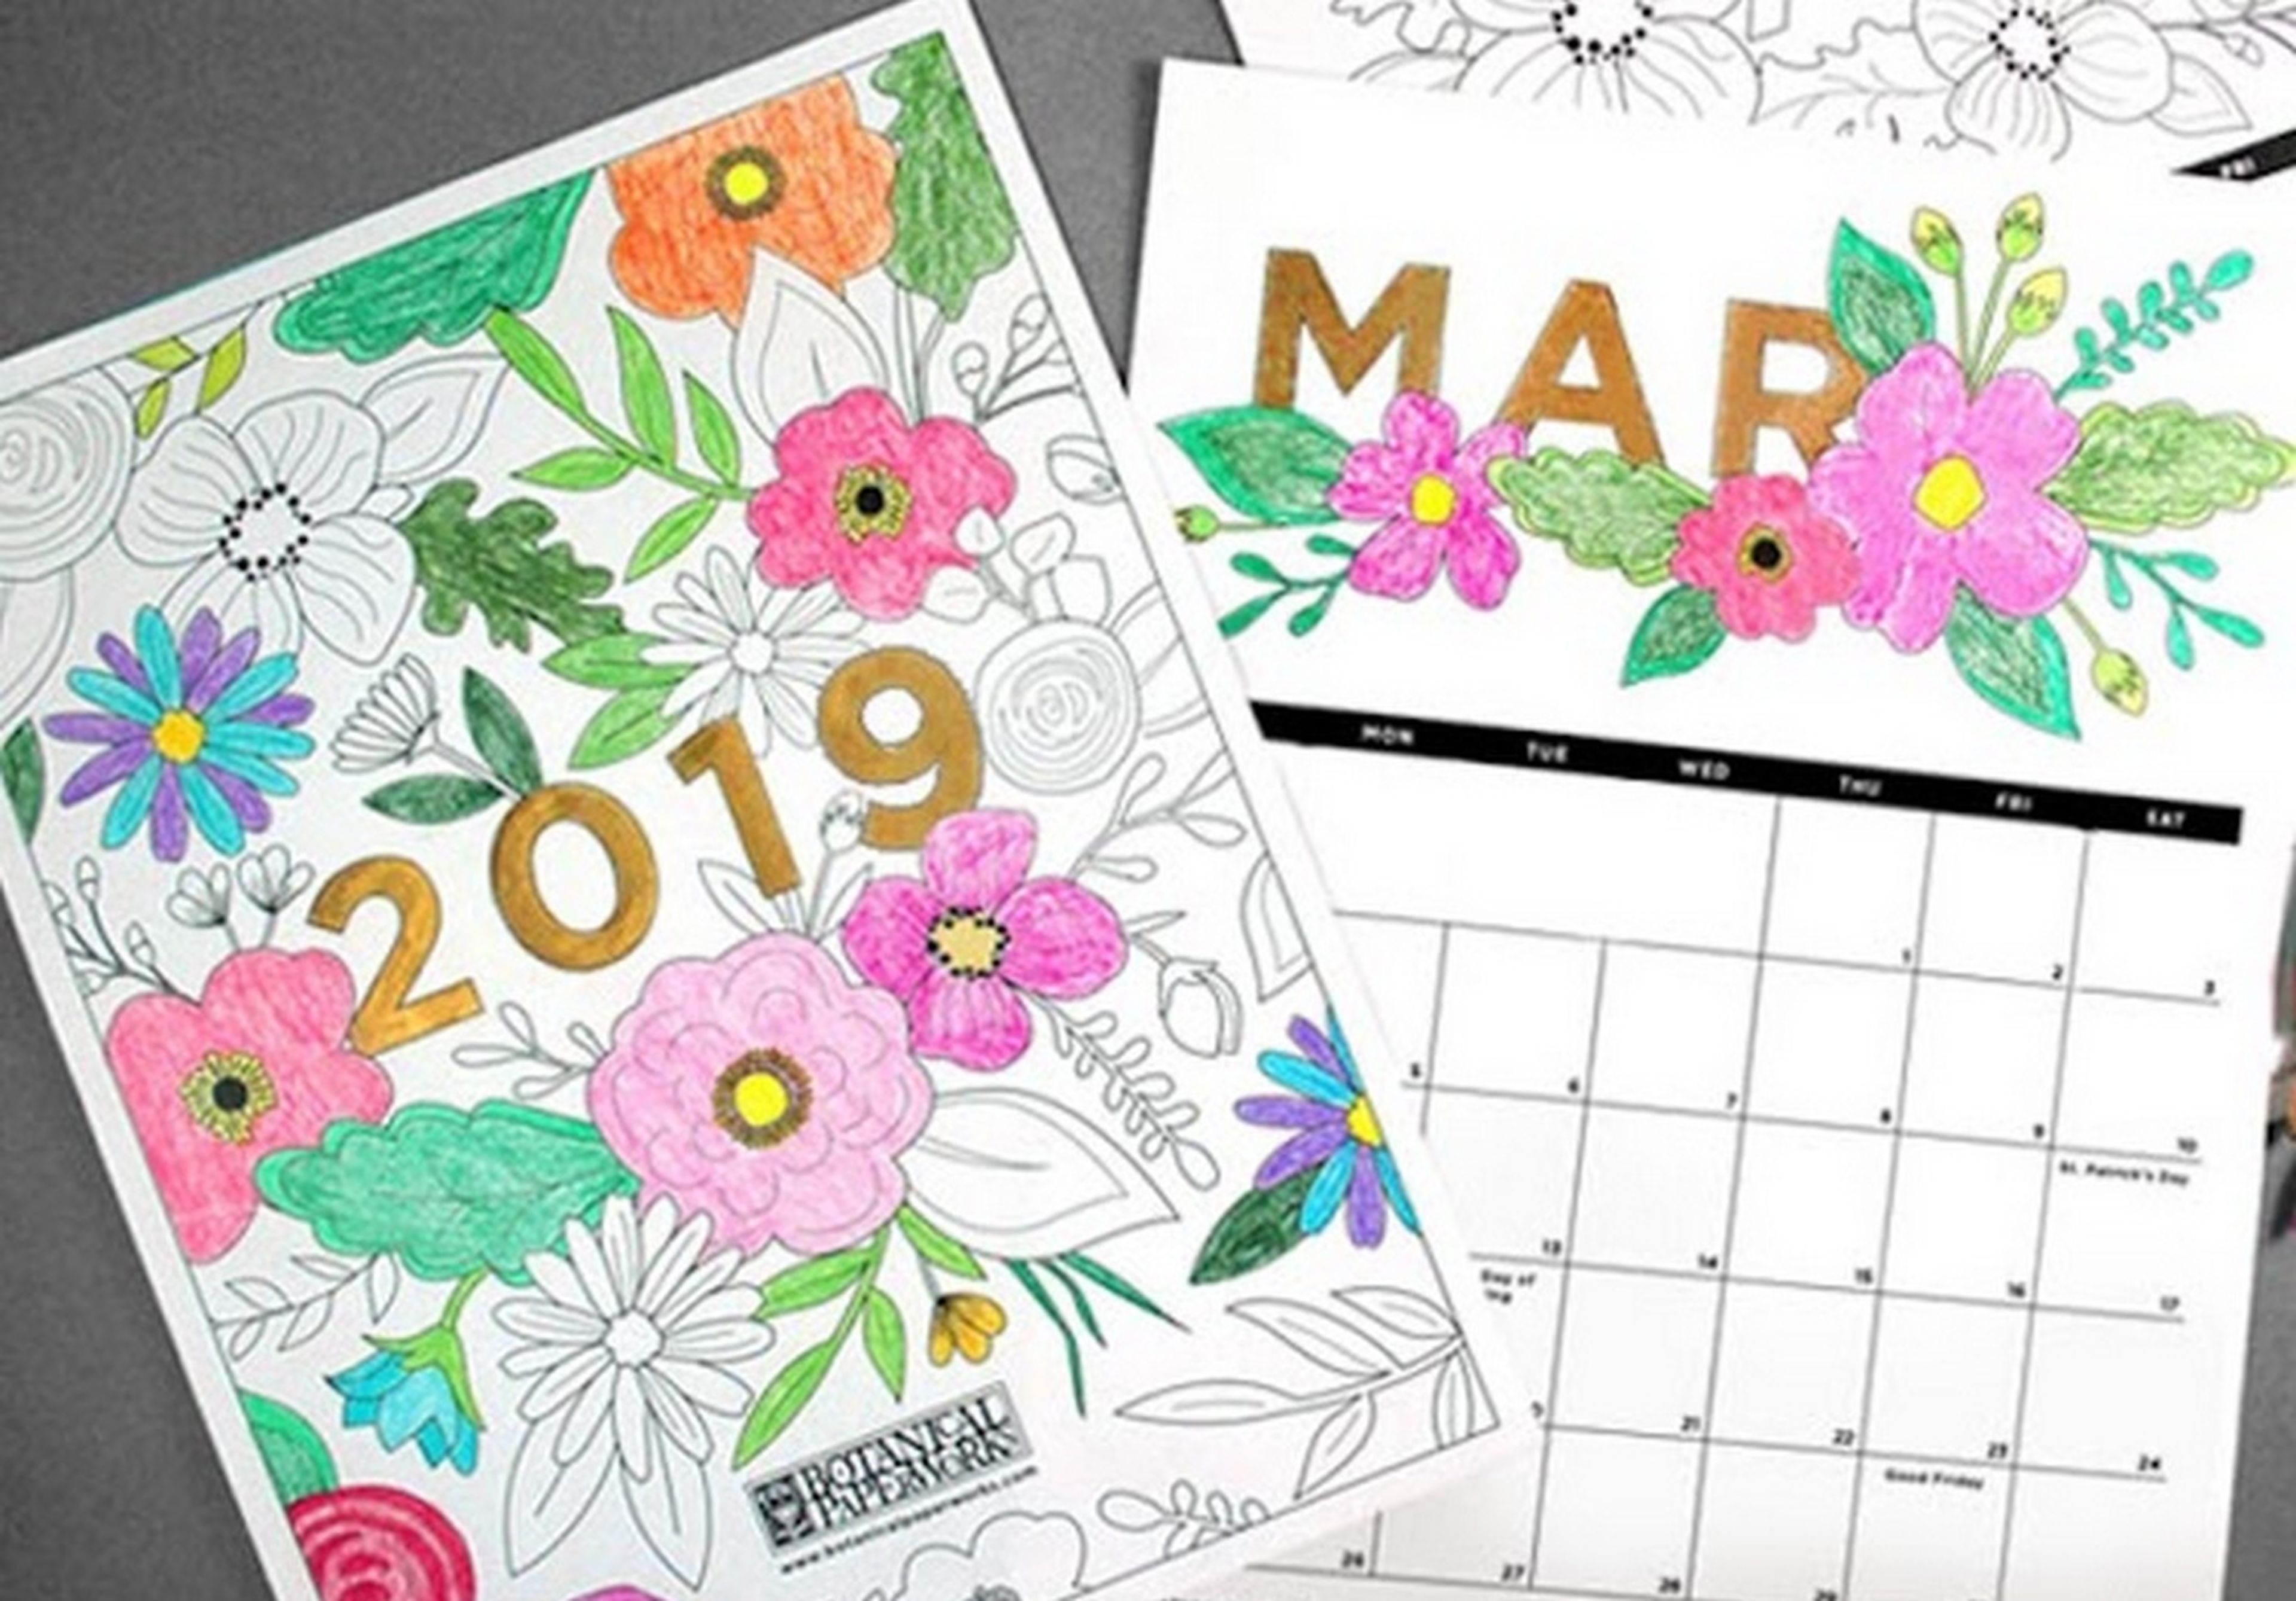 Descarga el Calendario 2019: plantillas, imágenes y diferentes formatos